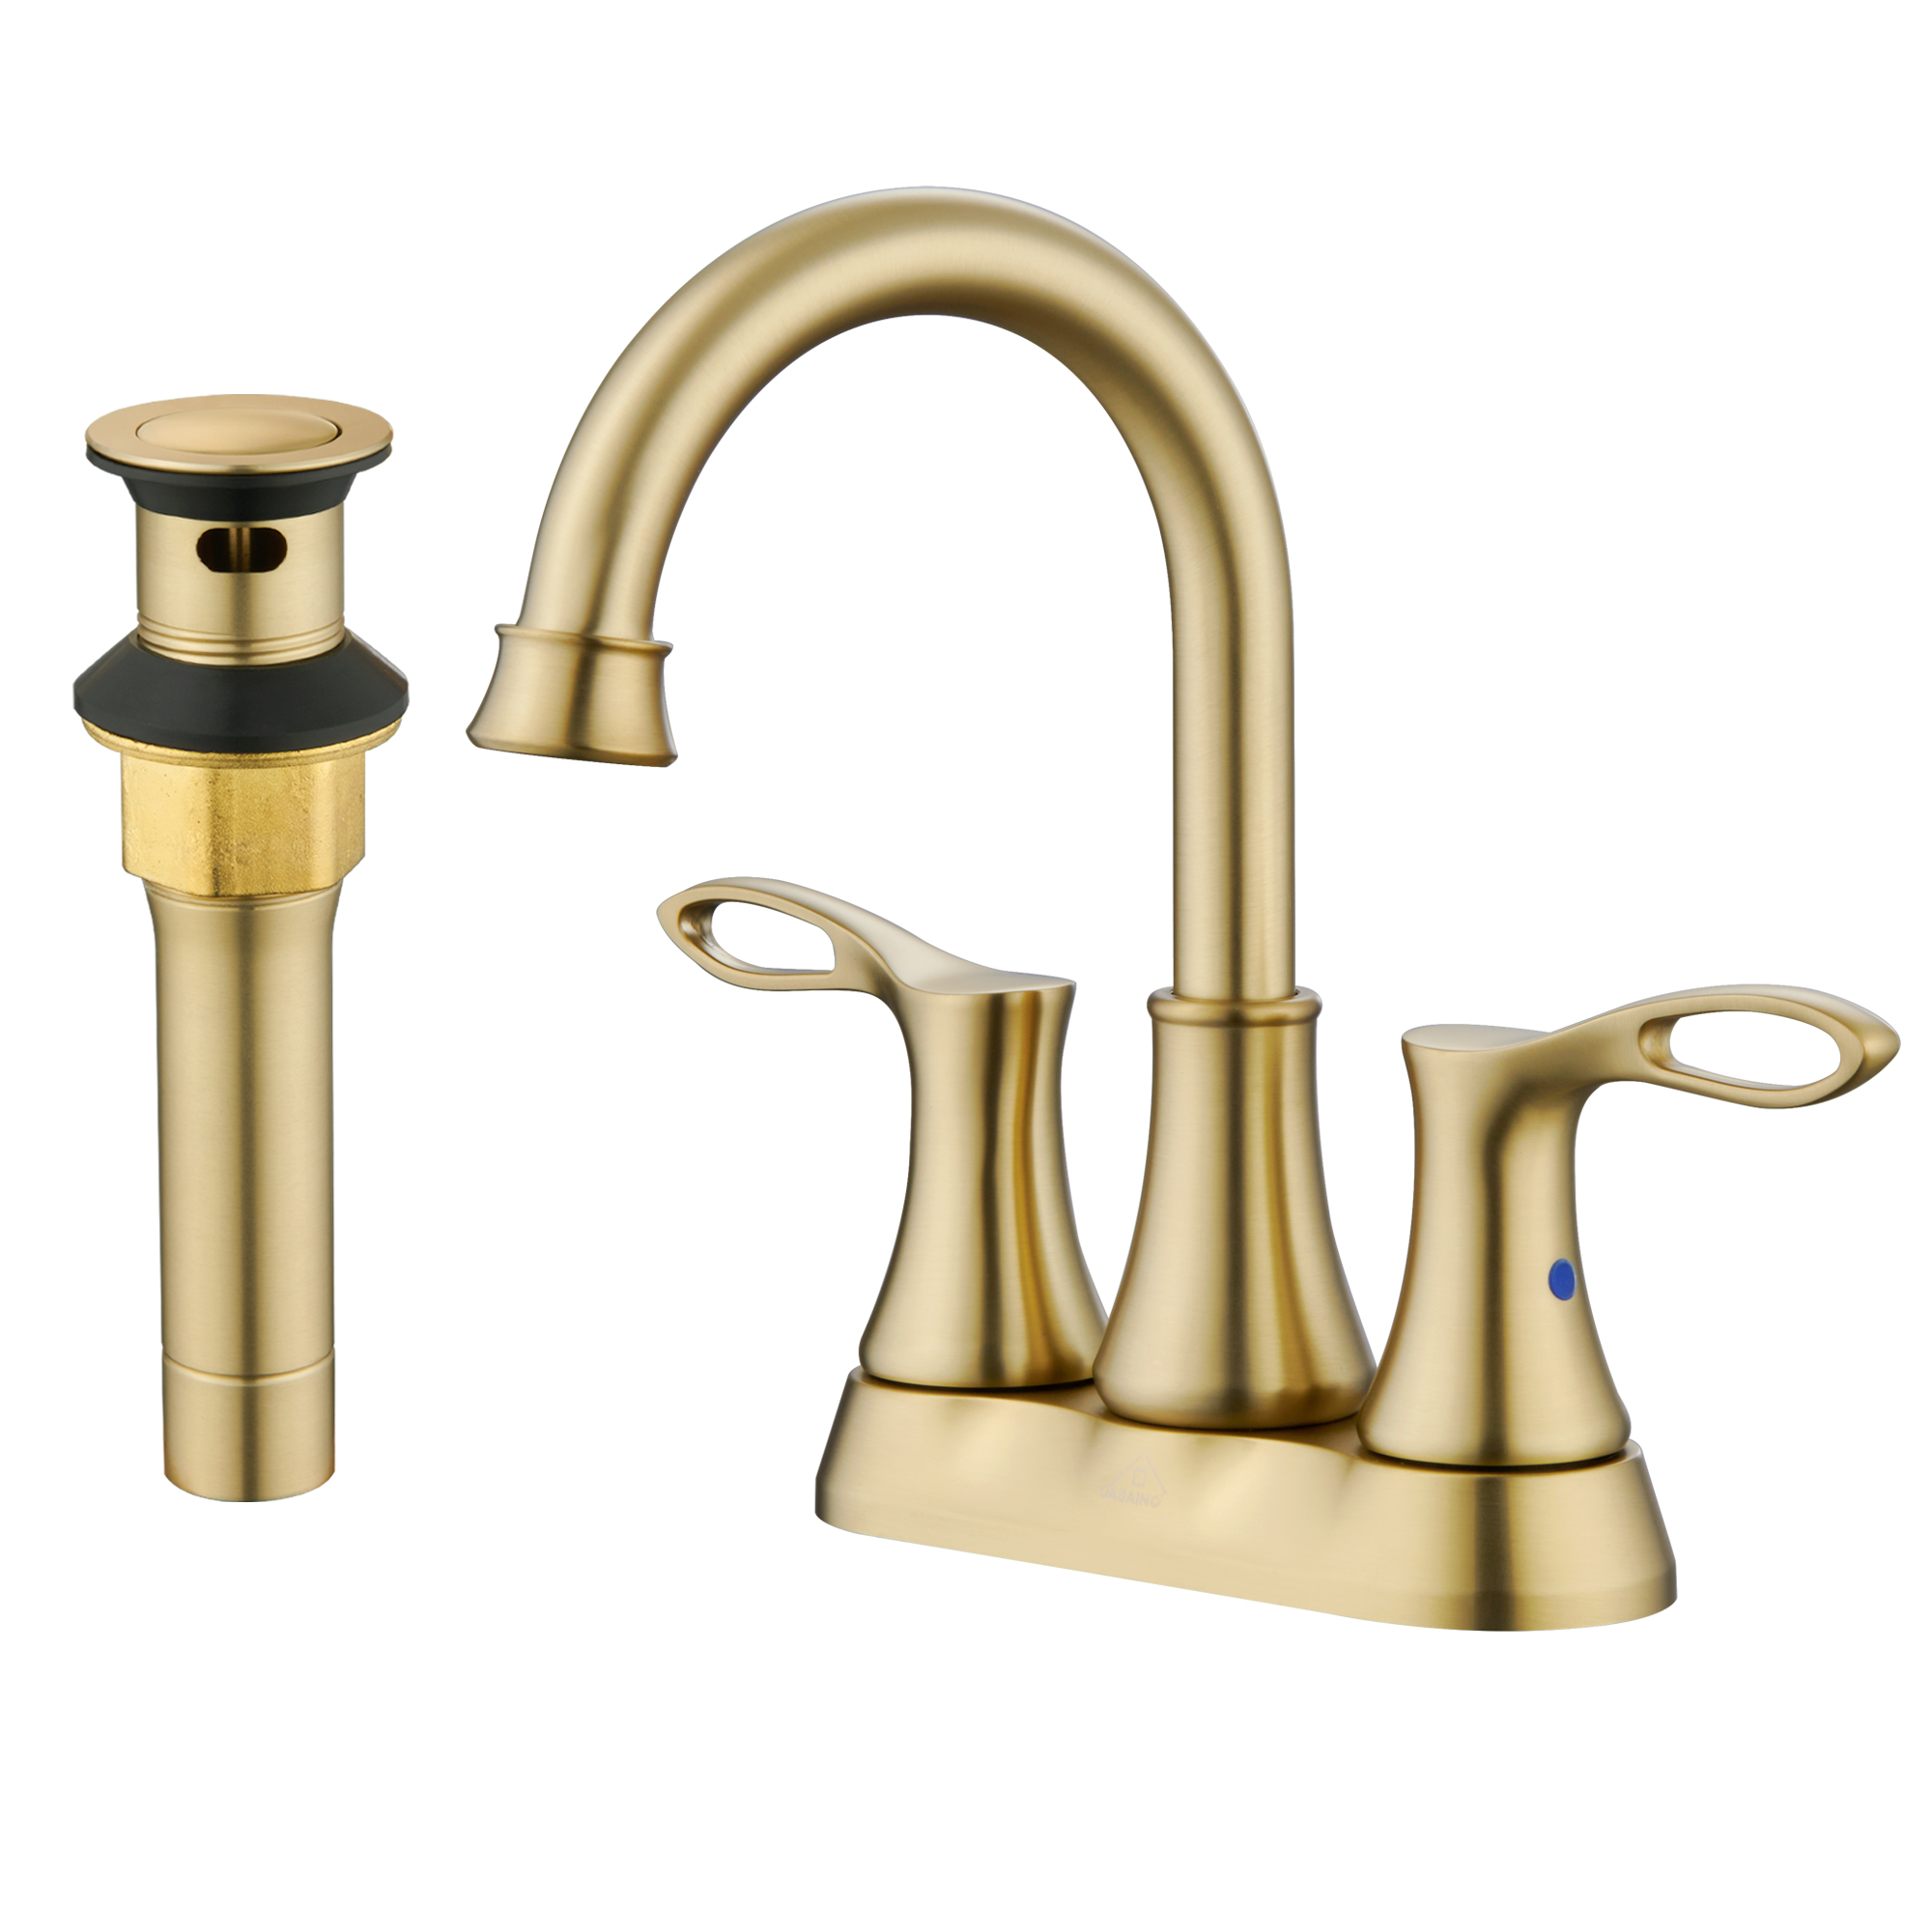 Casainc 4 Inch 2-Handle features Centerset Bathroom Sink Faucet 360° Swivel Spout Vanity Faucet gold tones